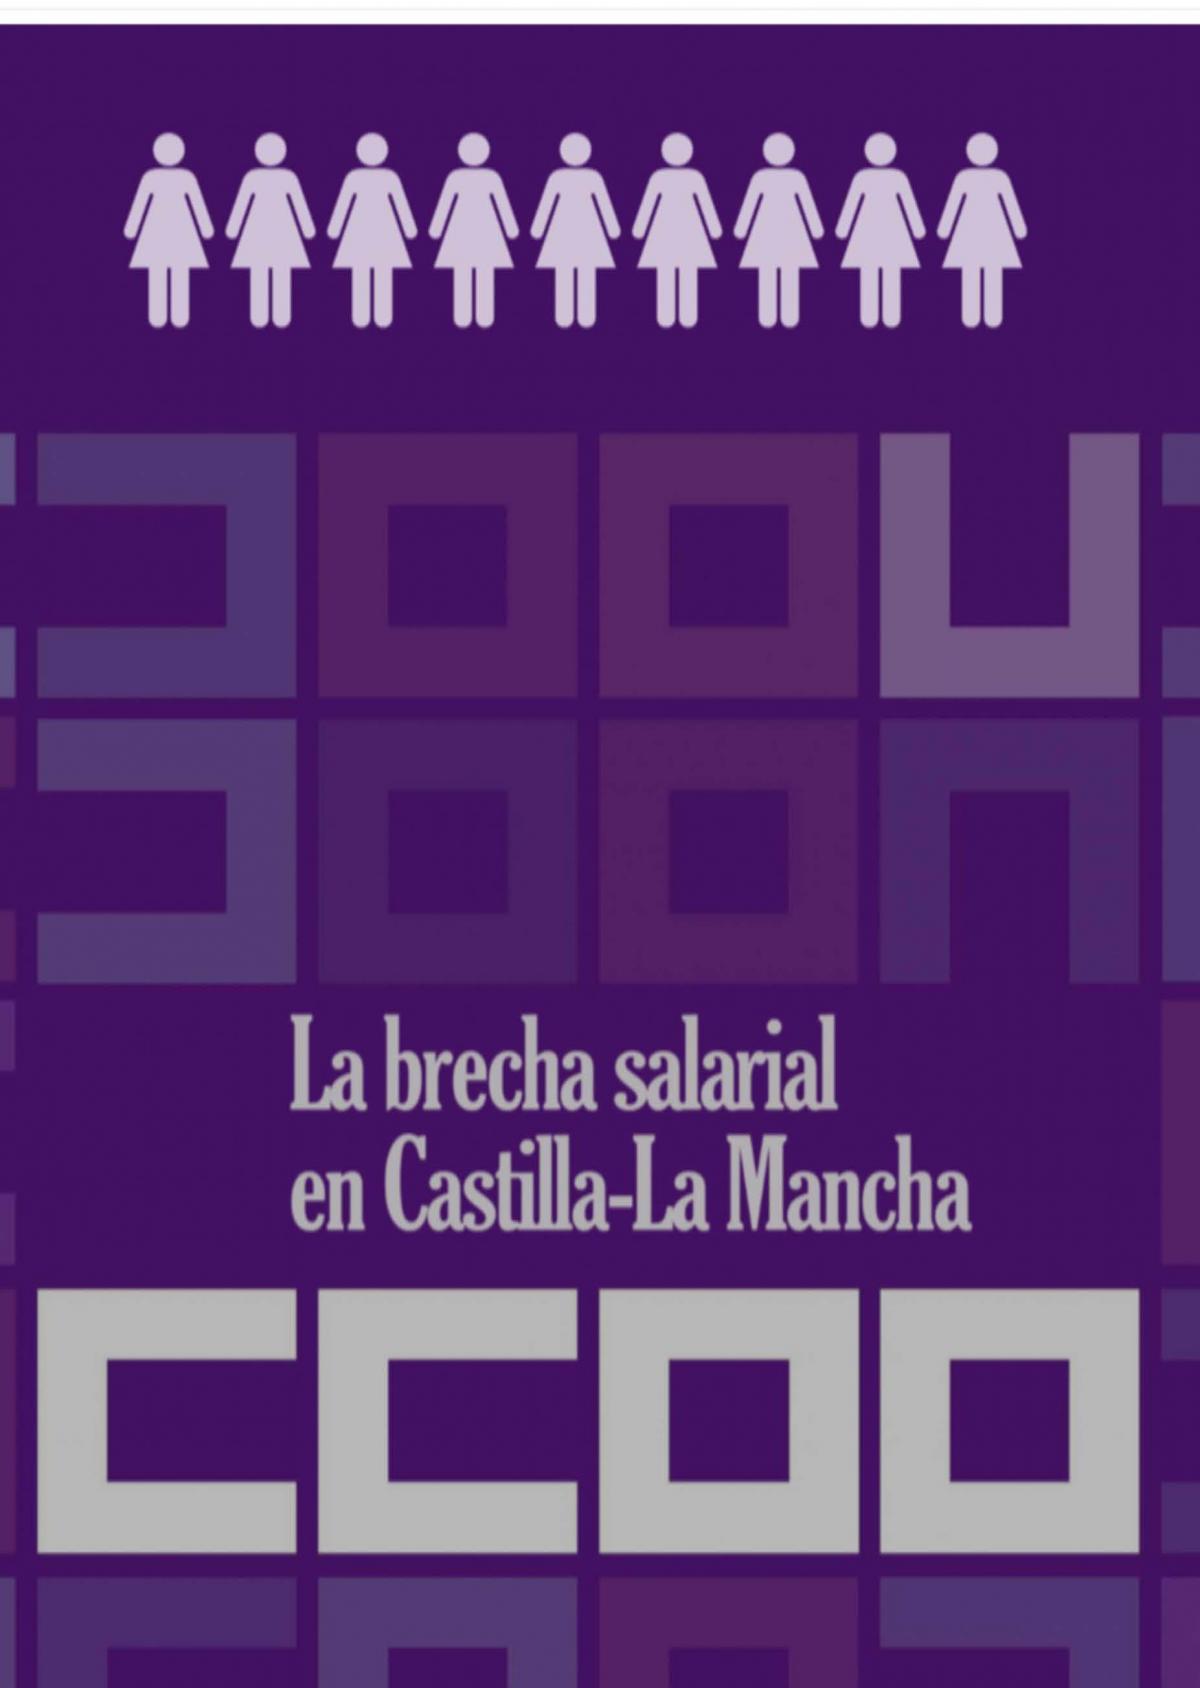 "La brecha salarial en Castilla-La Mancha".